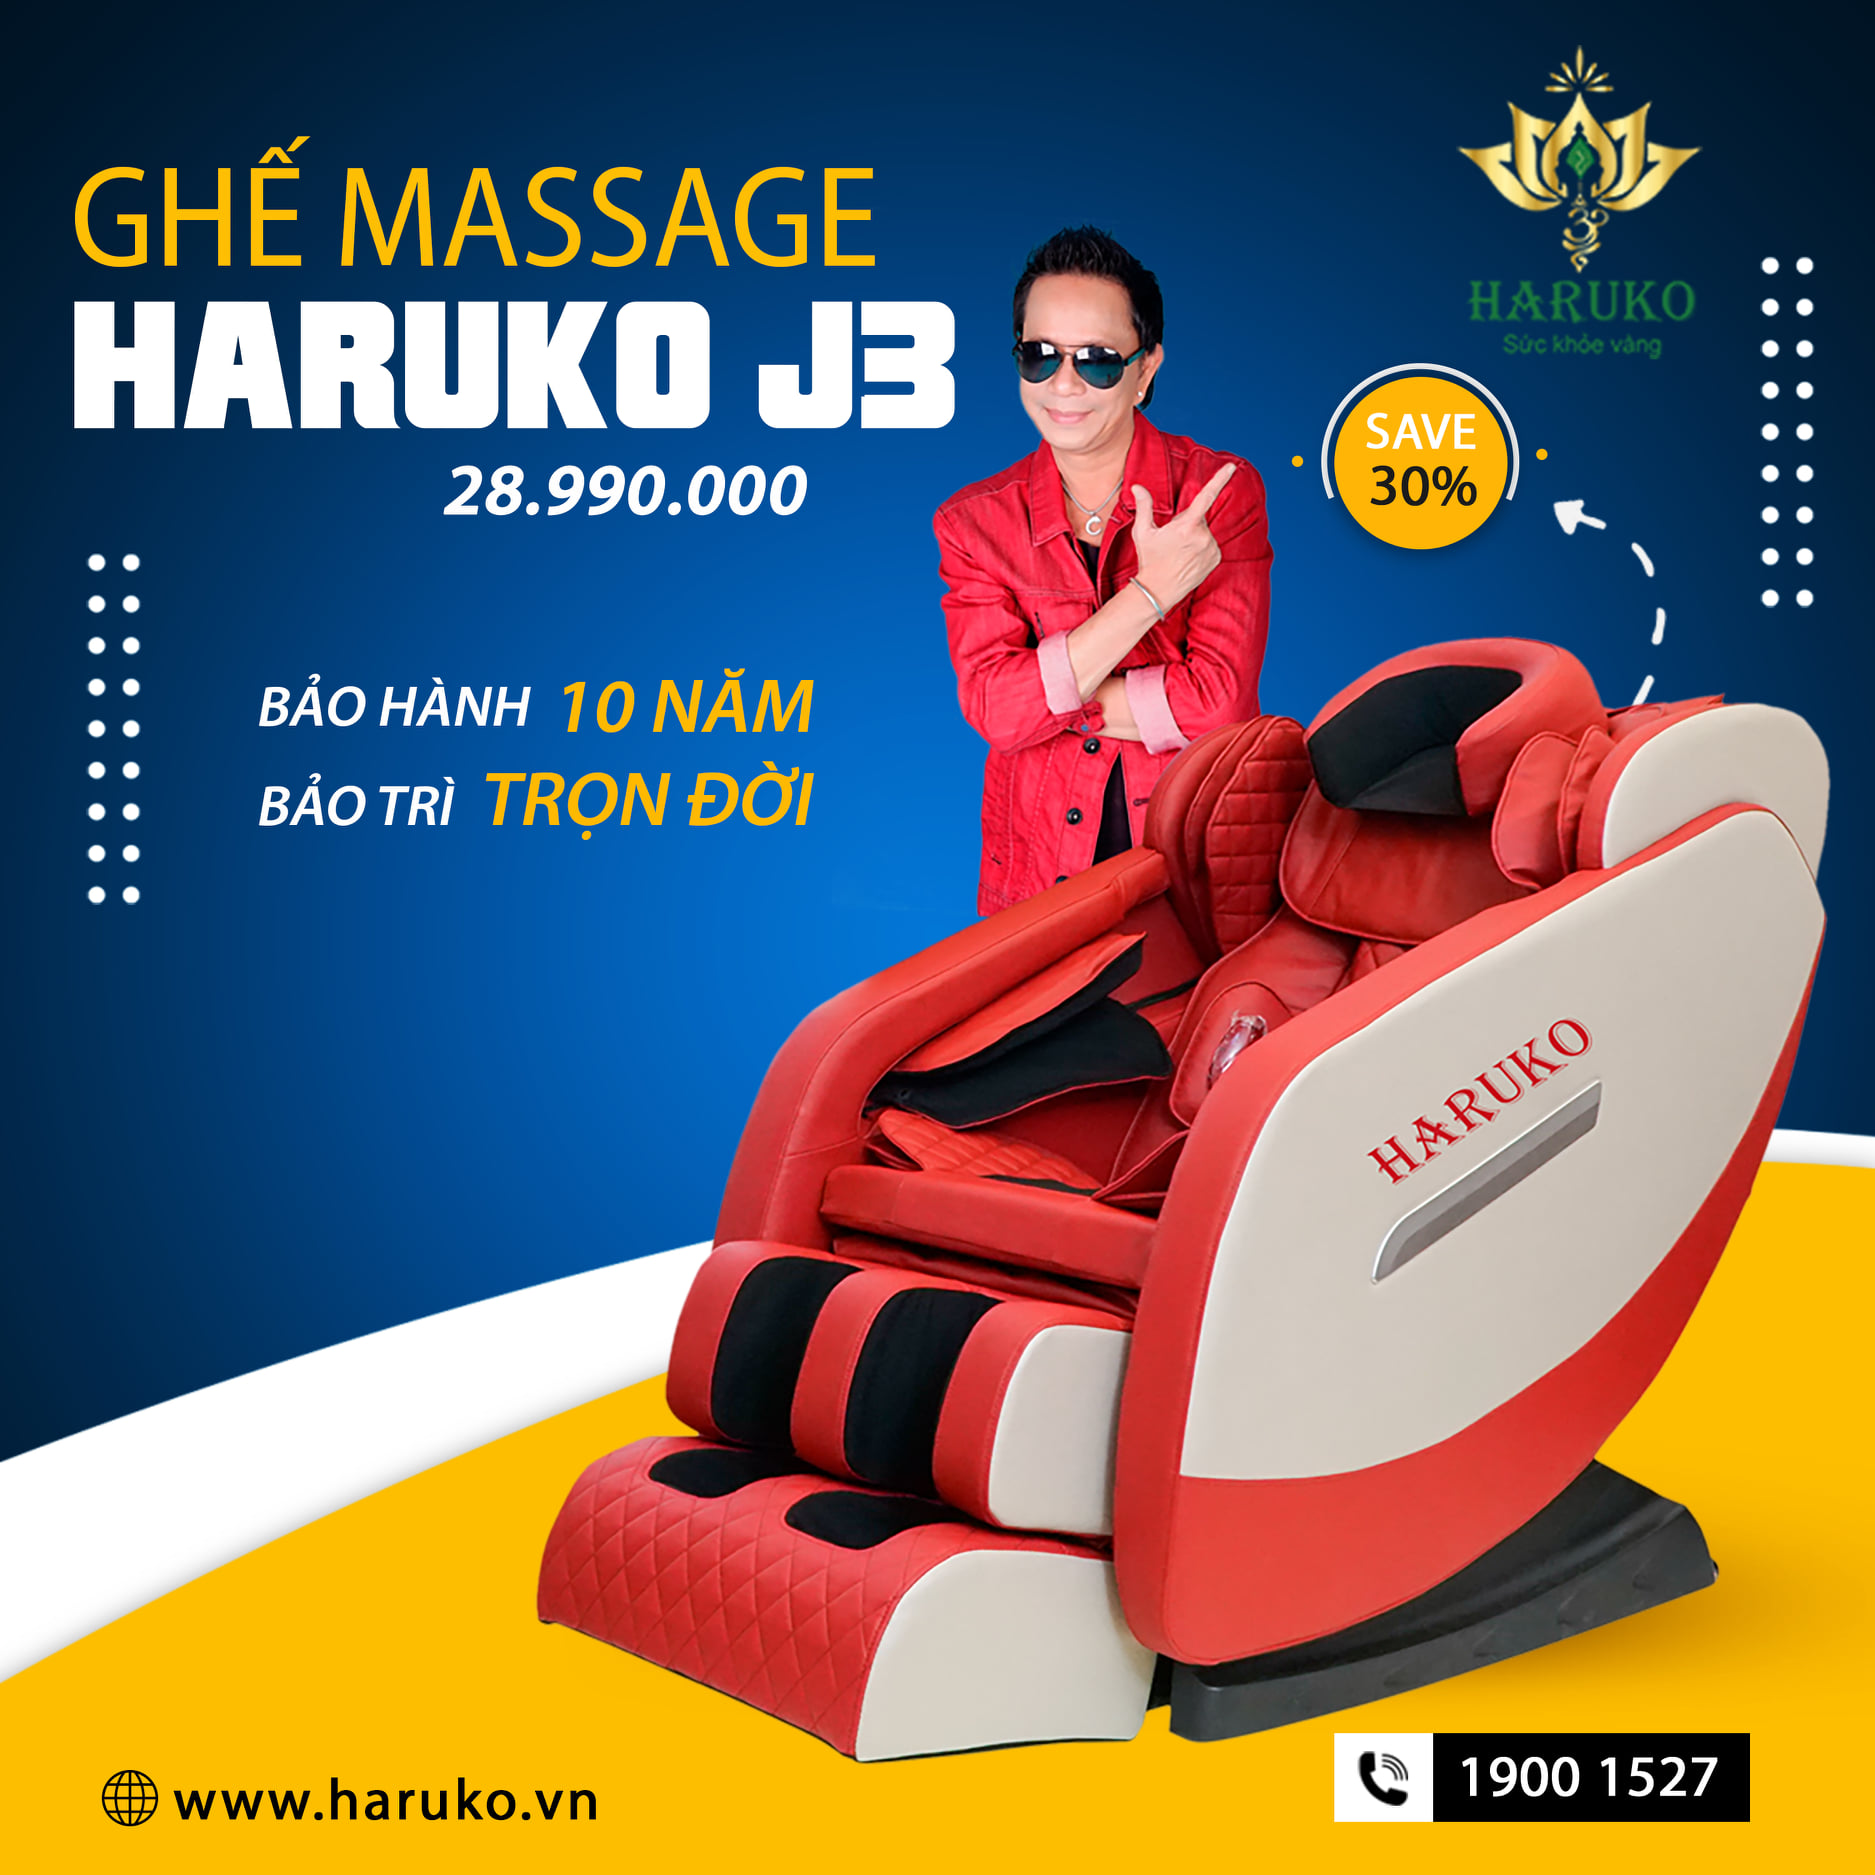 Haruko-J3 là sản phẩm tầm trung phổ biến với hệ thống con lăn ghế massage hiện đại